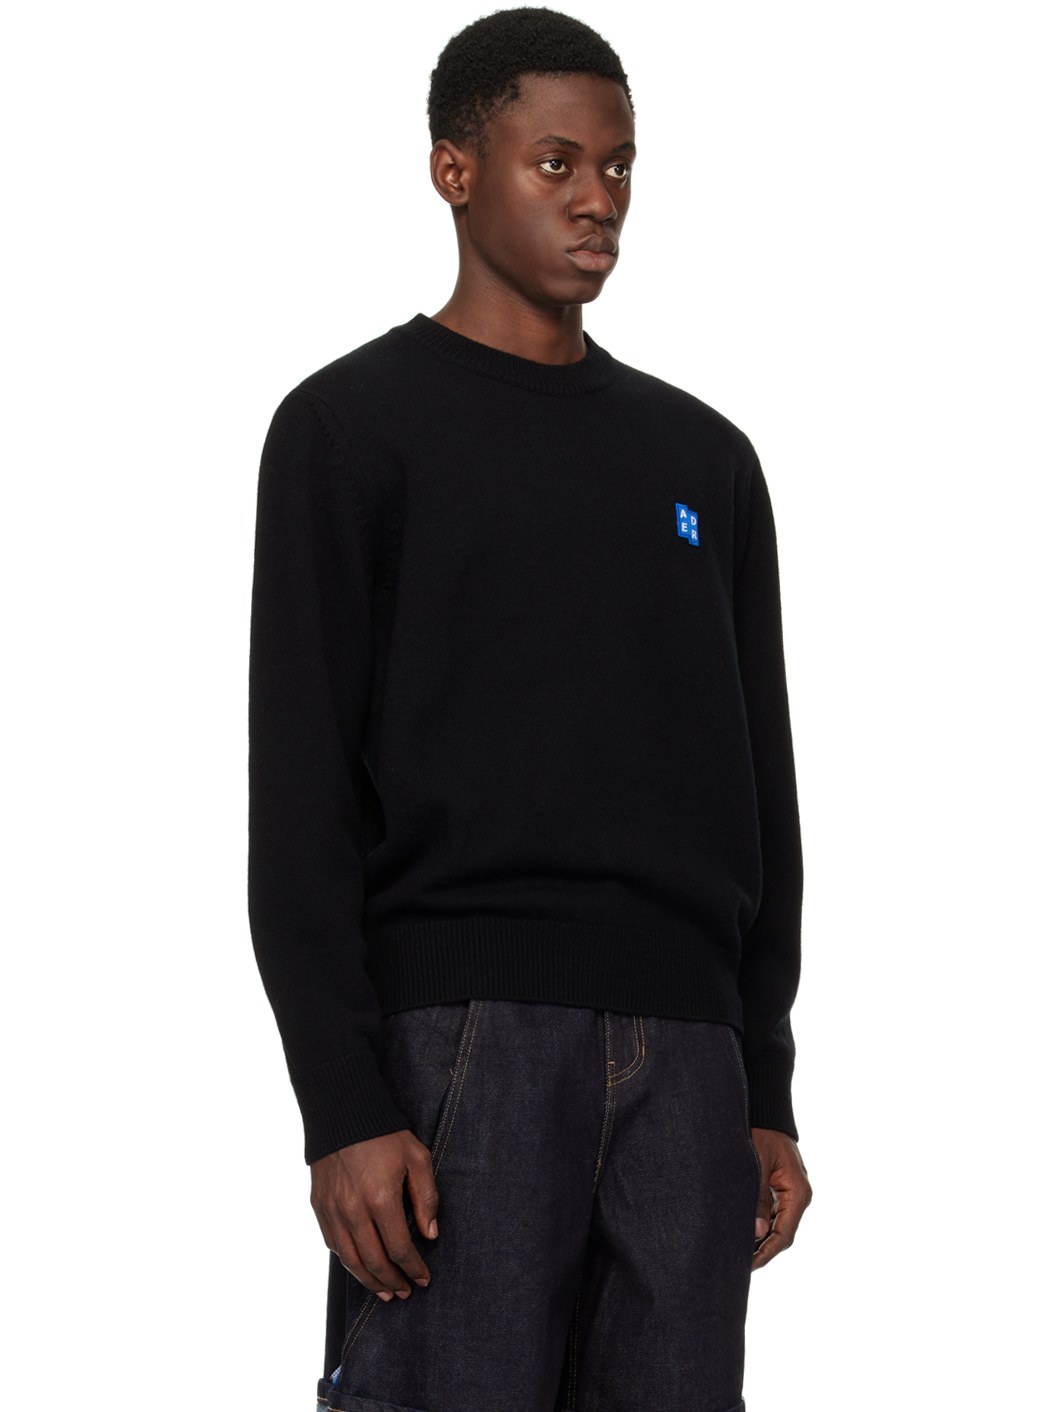 Black Dropped Shoulder Sweater - 2